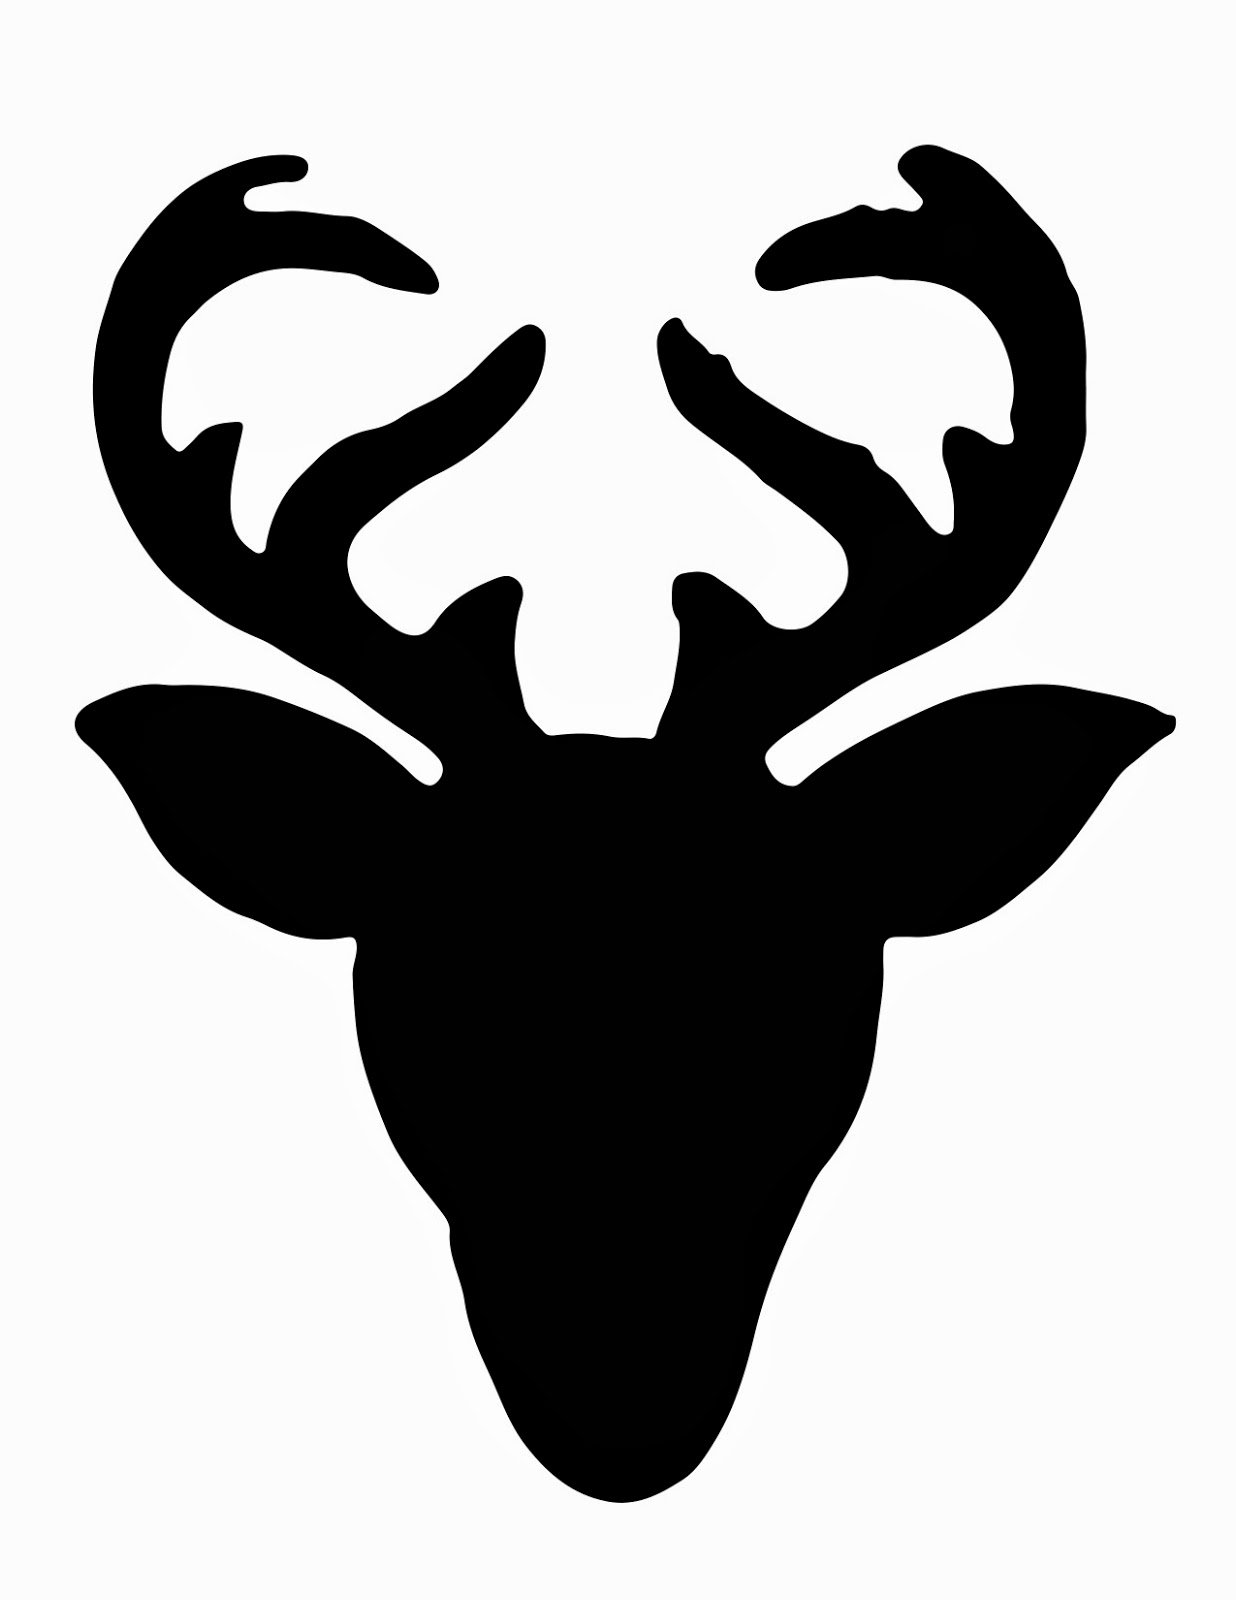 6 Best Images of Deer Head Silhouette Free Printable